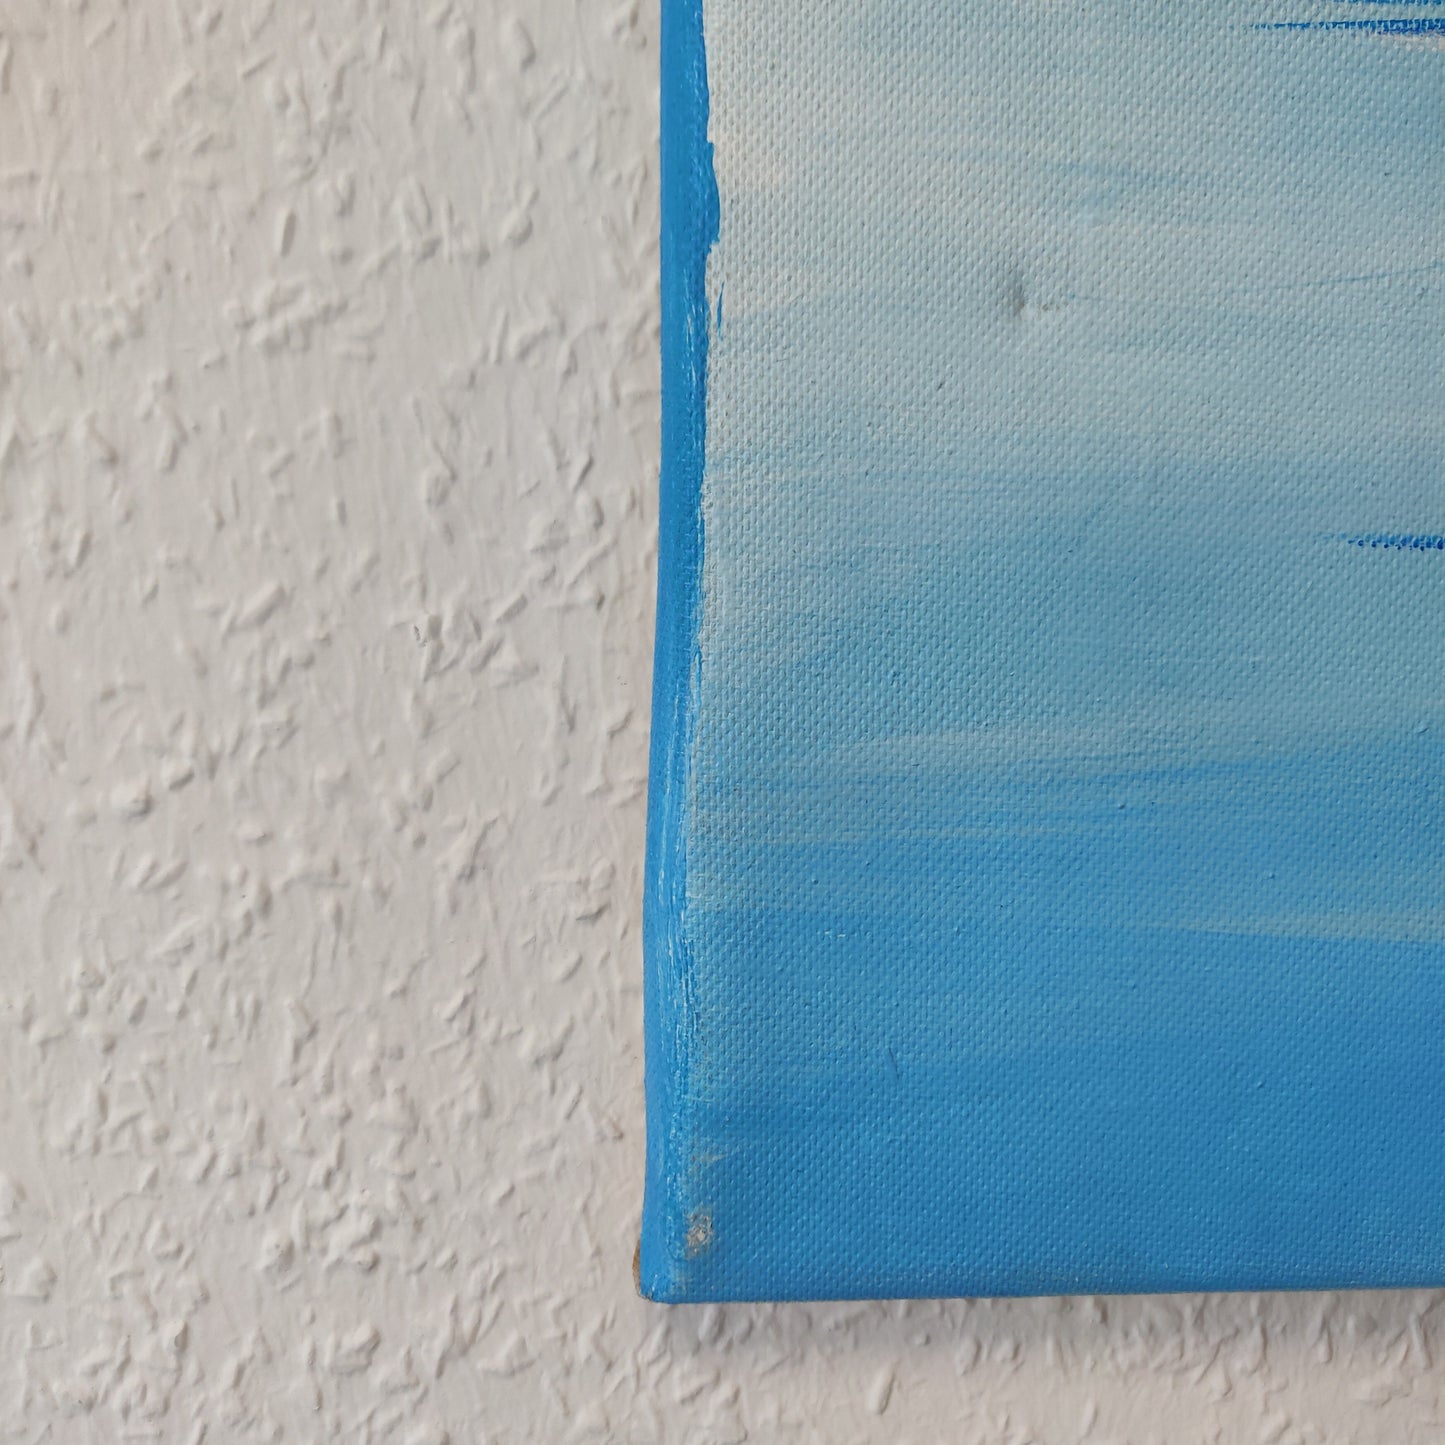 • B-Ware • 'Blauer Morgen' 80 x 60 cm